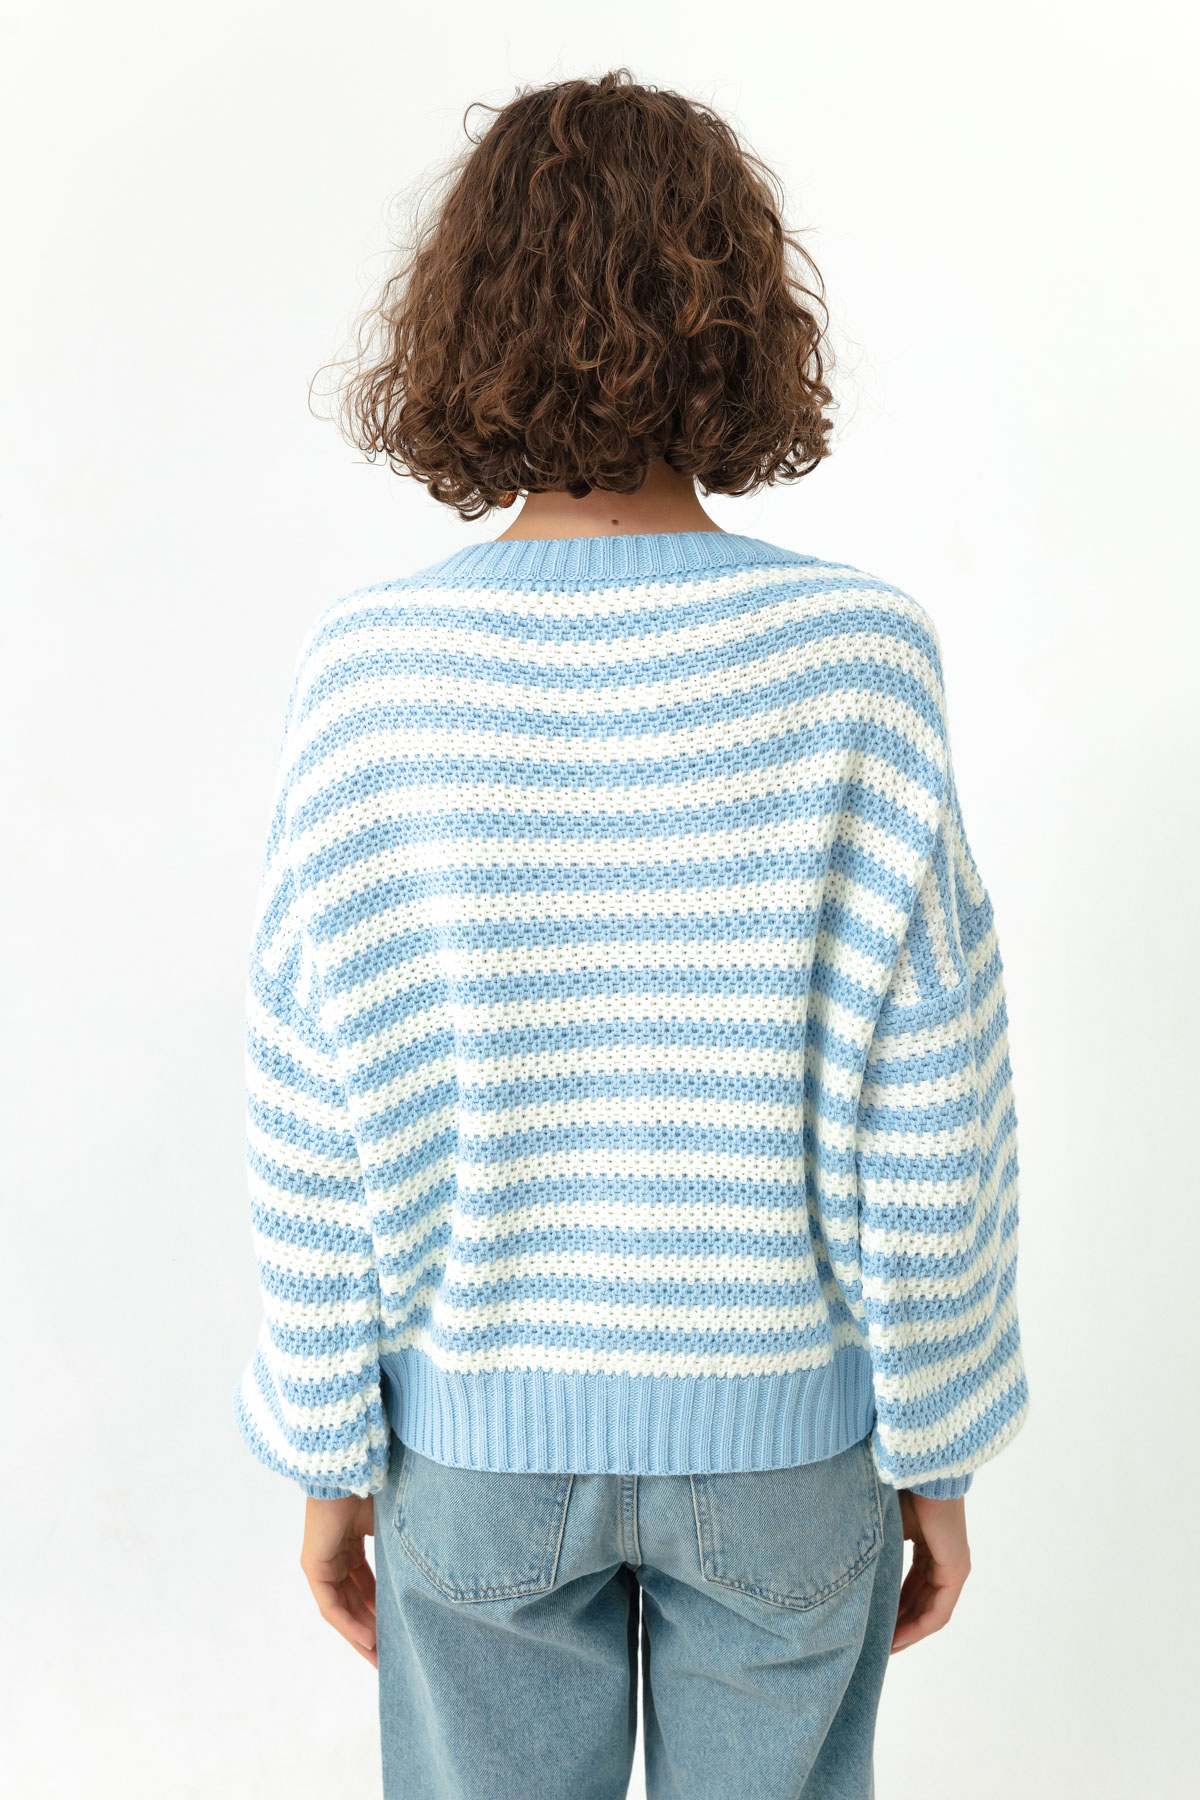 Women's Baby Blue Striped Knitwear Cardigan